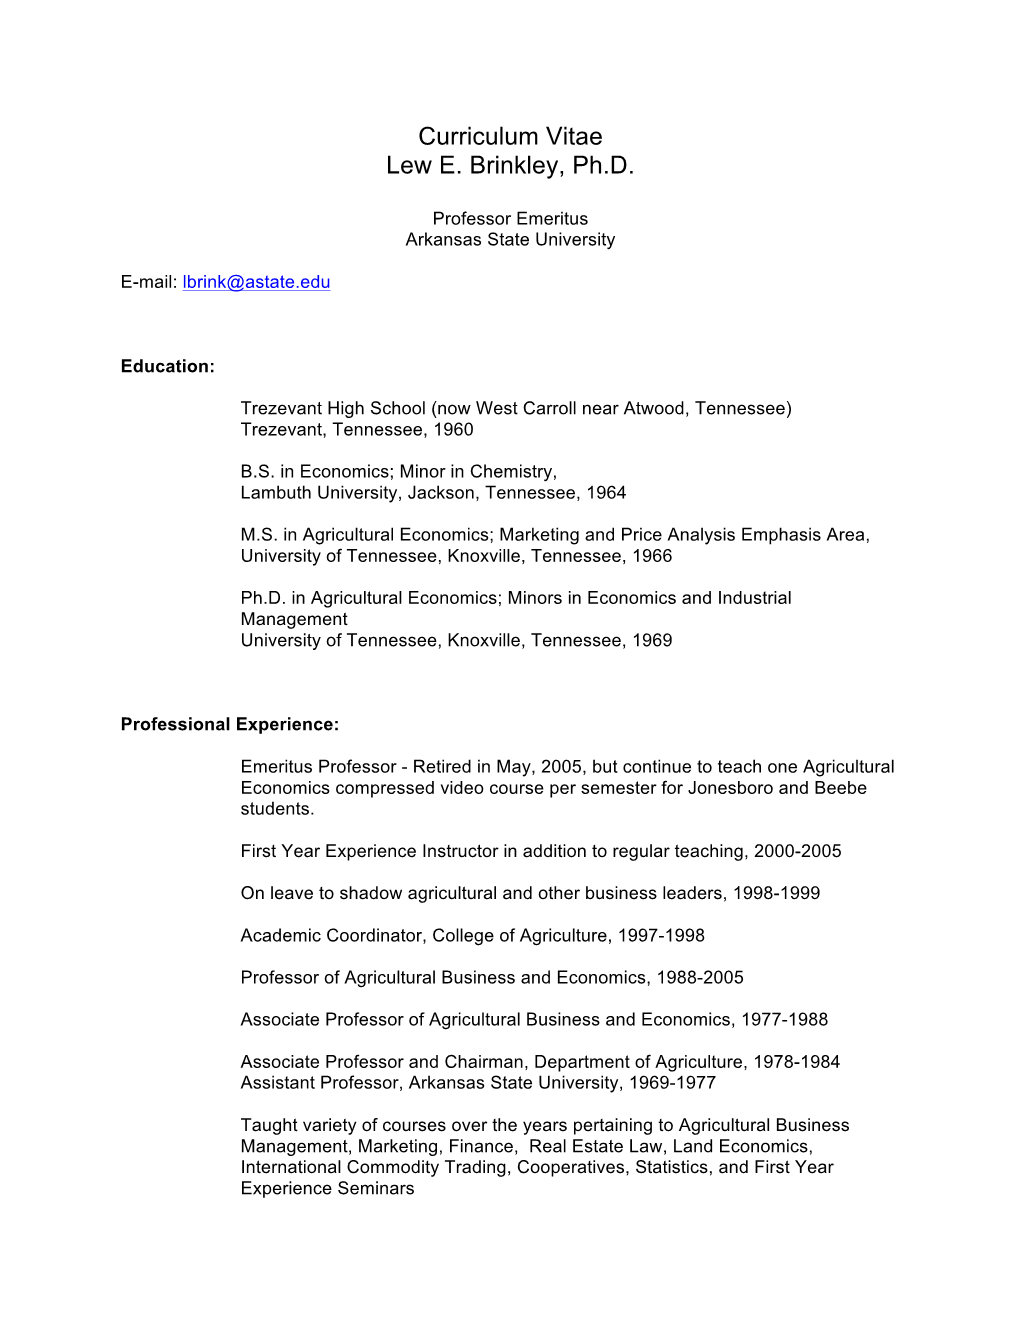 Curriculum Vitae Lew E. Brinkley, Ph.D